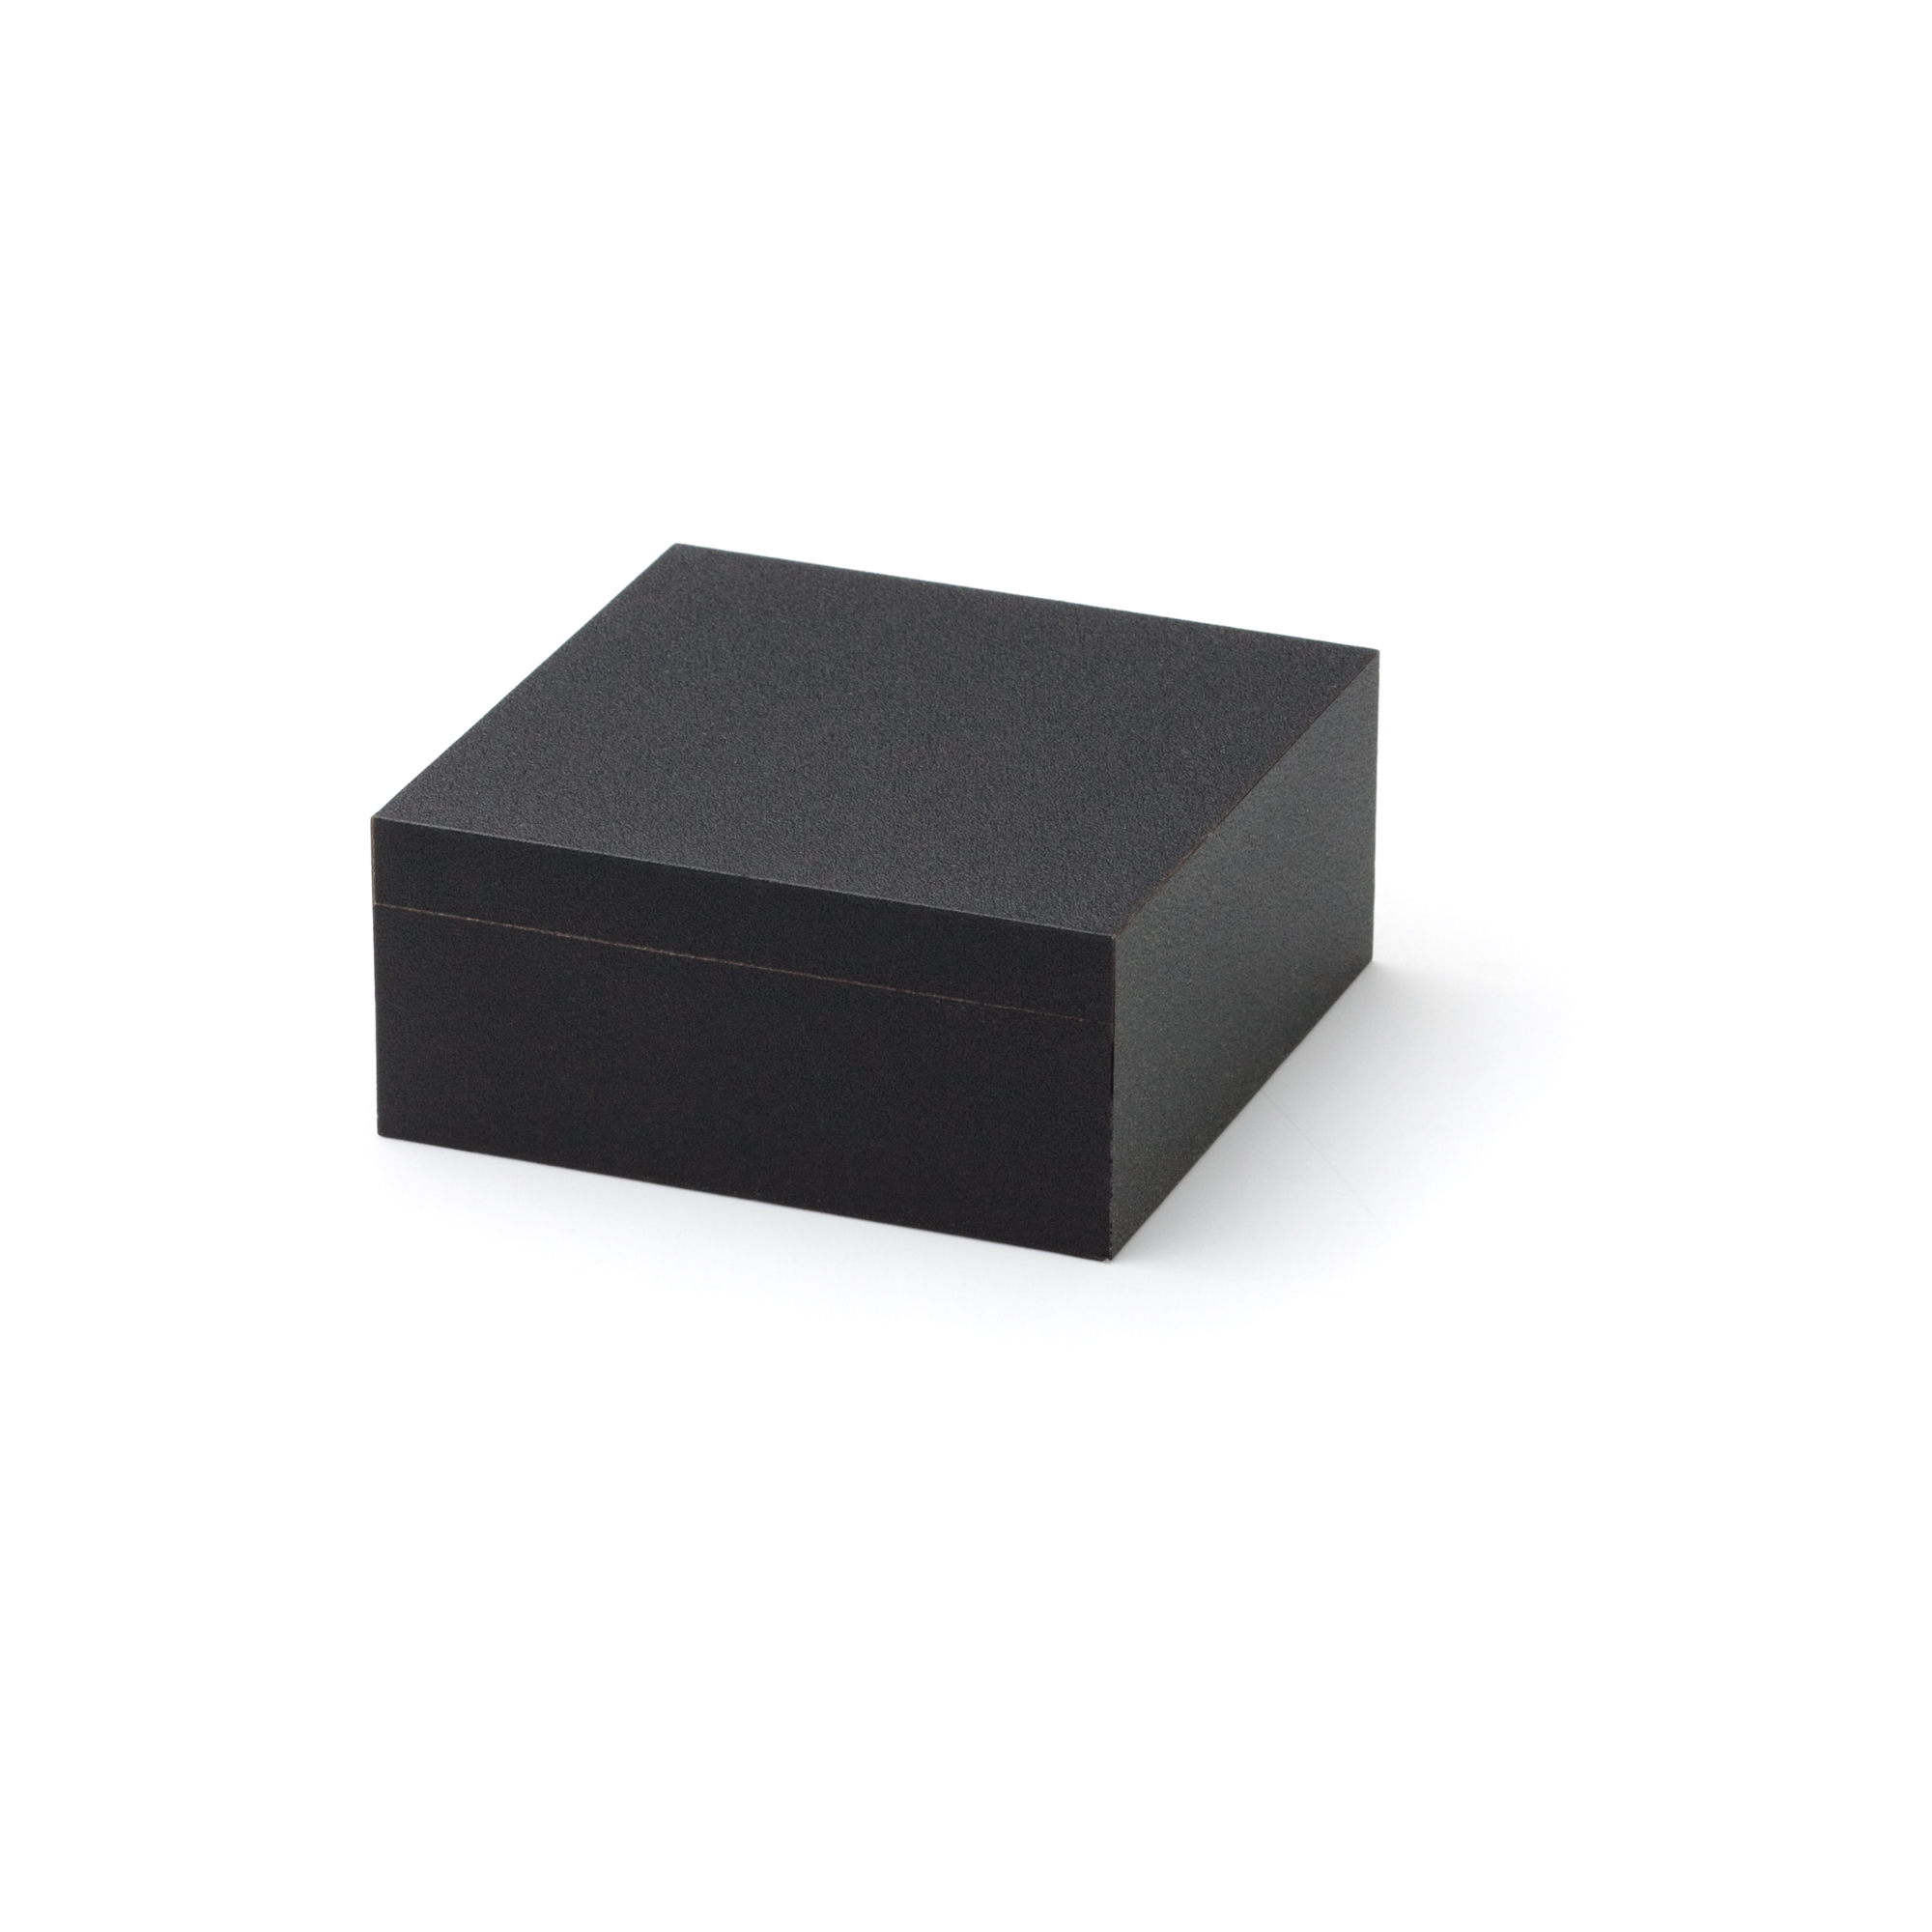 Blackbox Universal, 90 x 90 x 40 mm